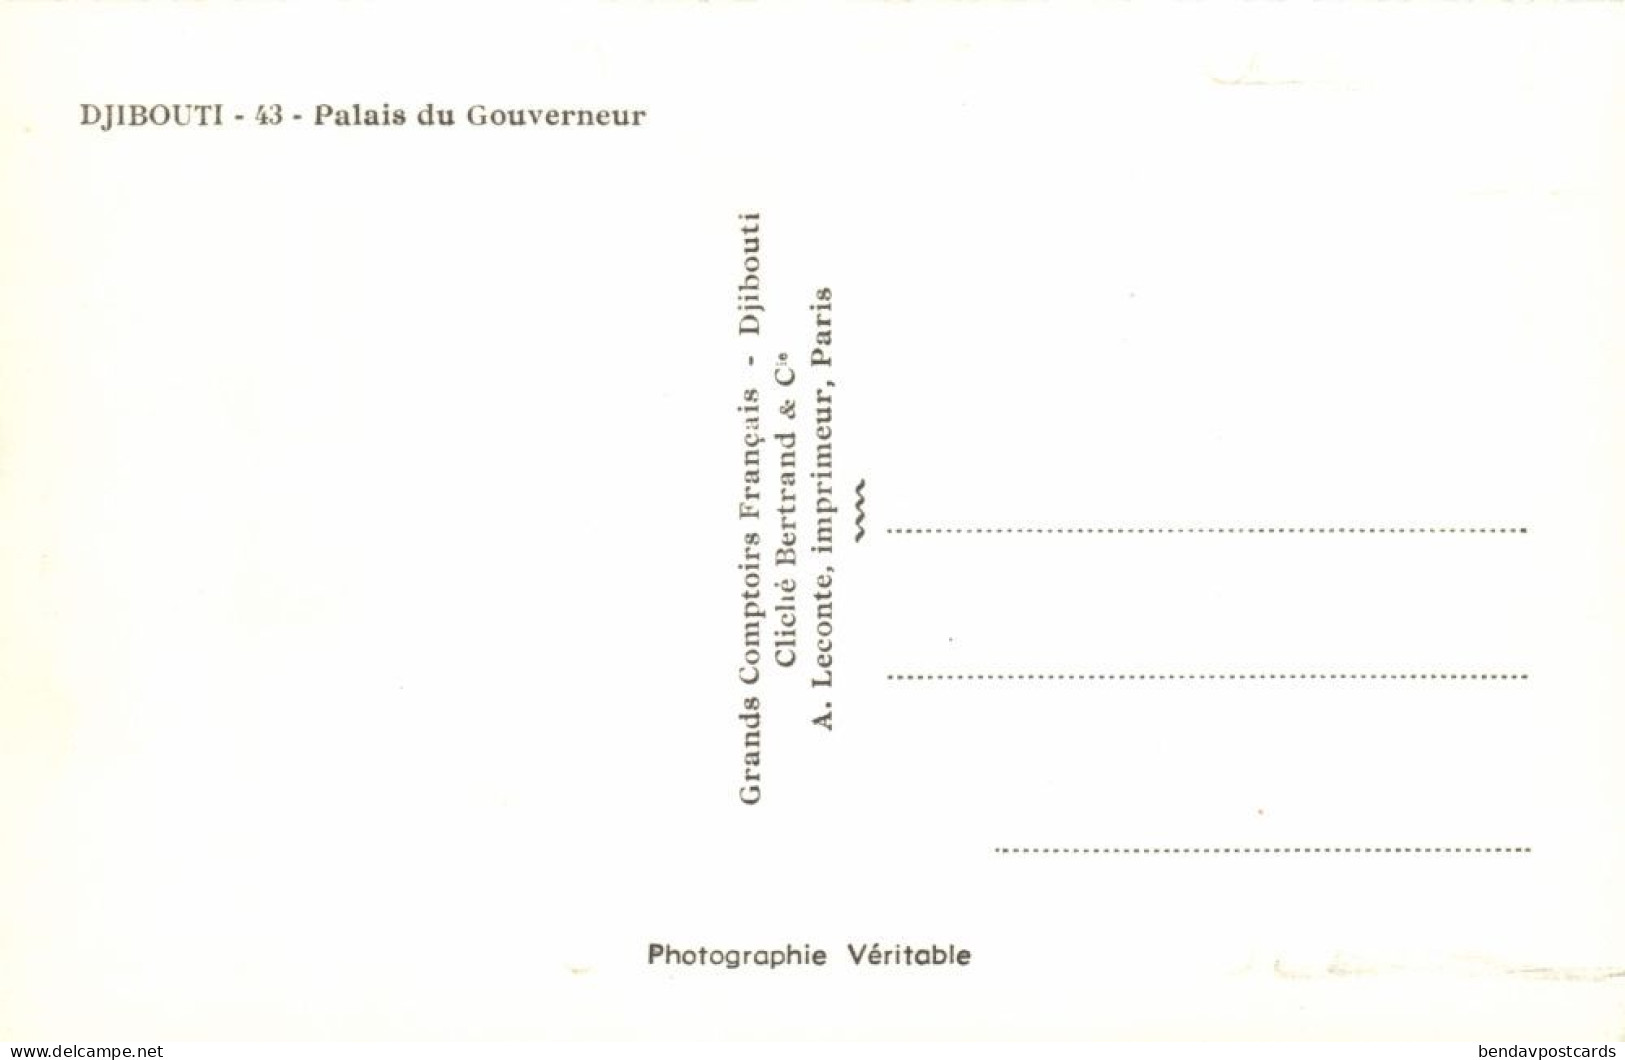 Djibouti, DJIBOUTI, Palais Du Gouverneur, Palace (1950s) RPPC Postcard - Djibouti